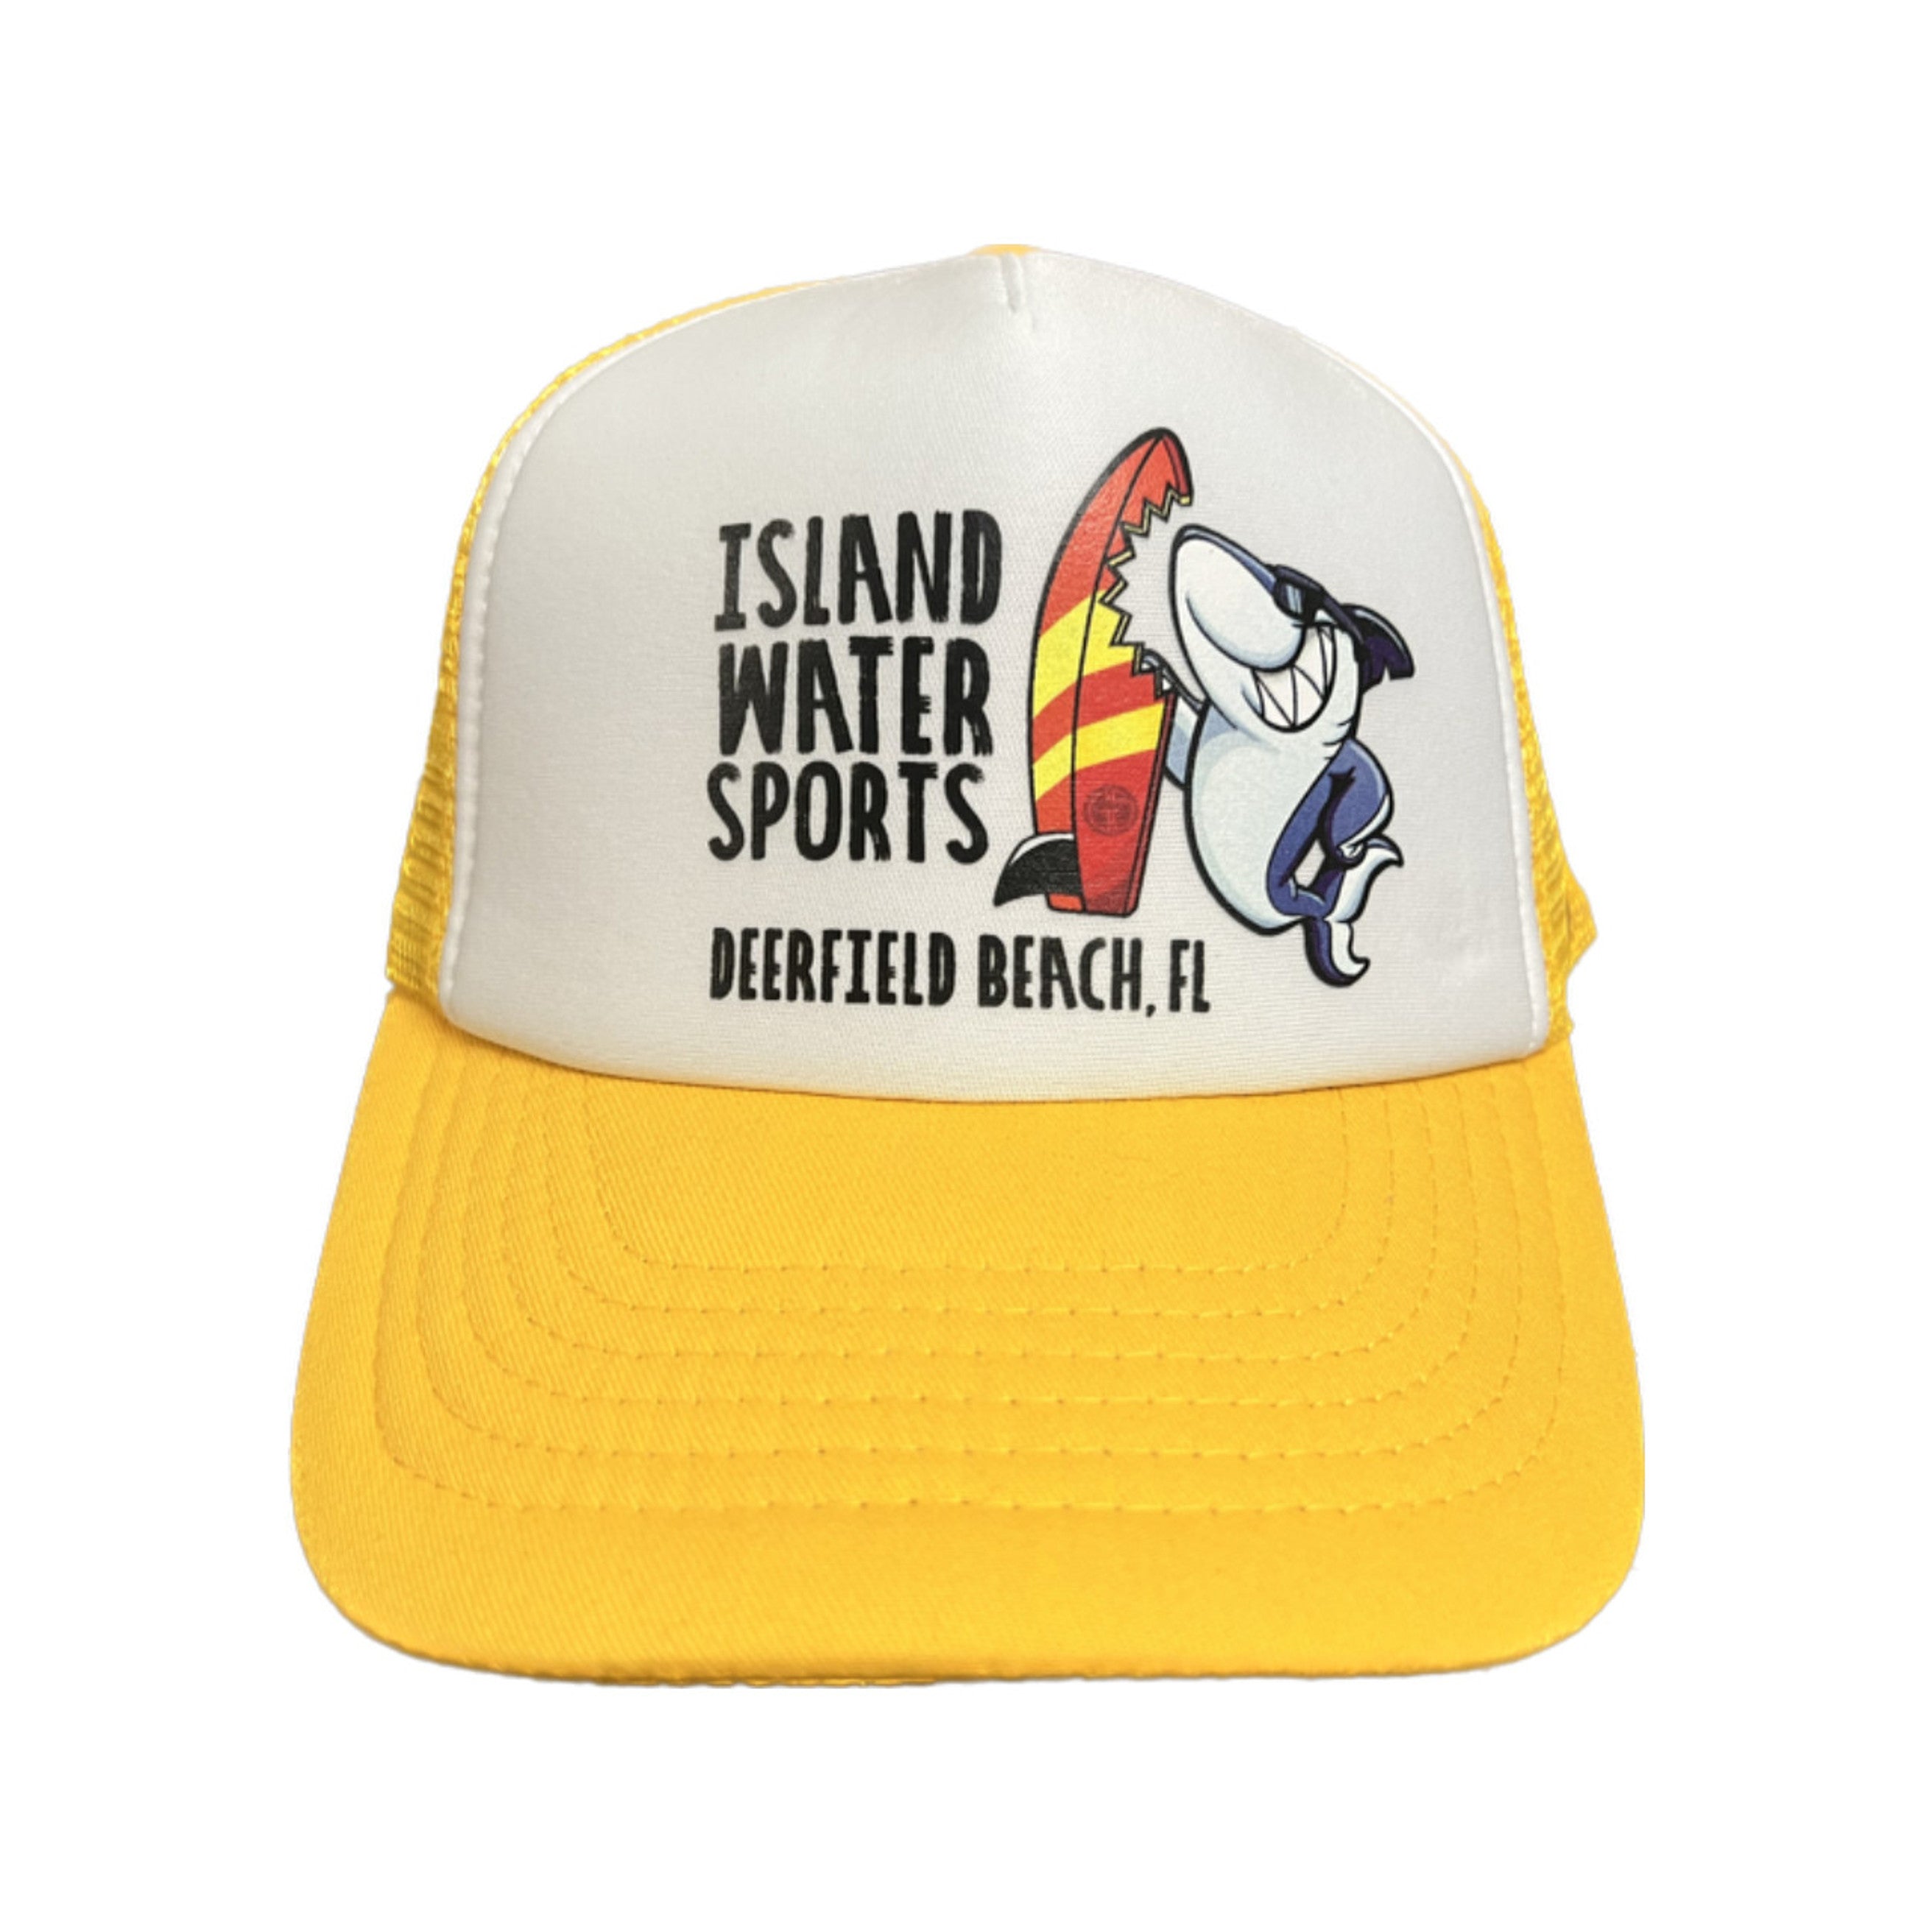 Grom Squad IWS Board Meeting Trucker Hat Yellow Mini